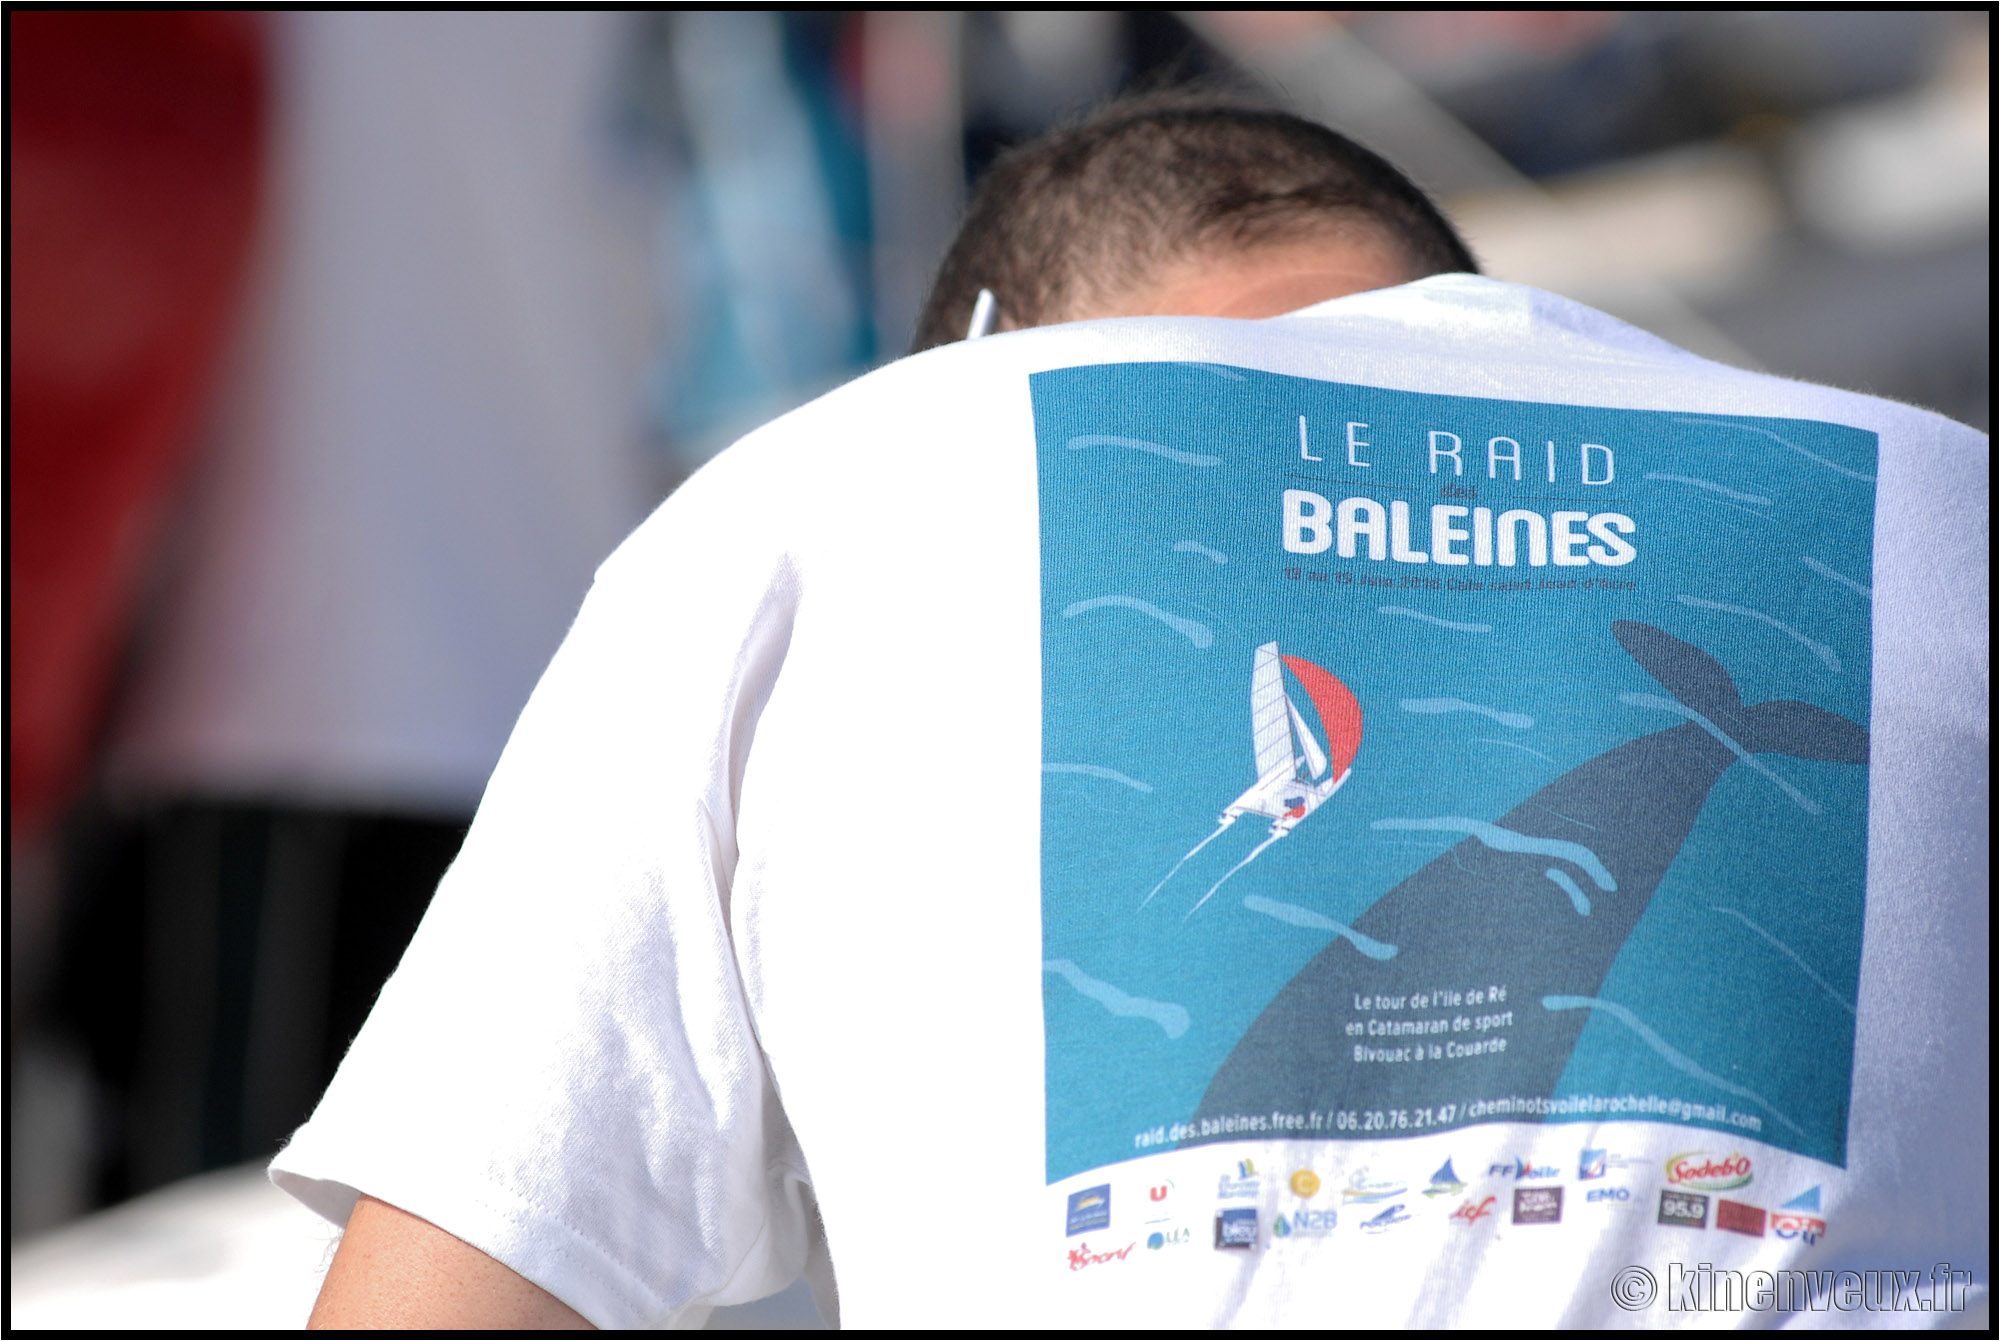 kinenveux_07_raidbaleines2016.jpg - Raid des Baleines 2016 - Préparatifs St Jean d'Acre.